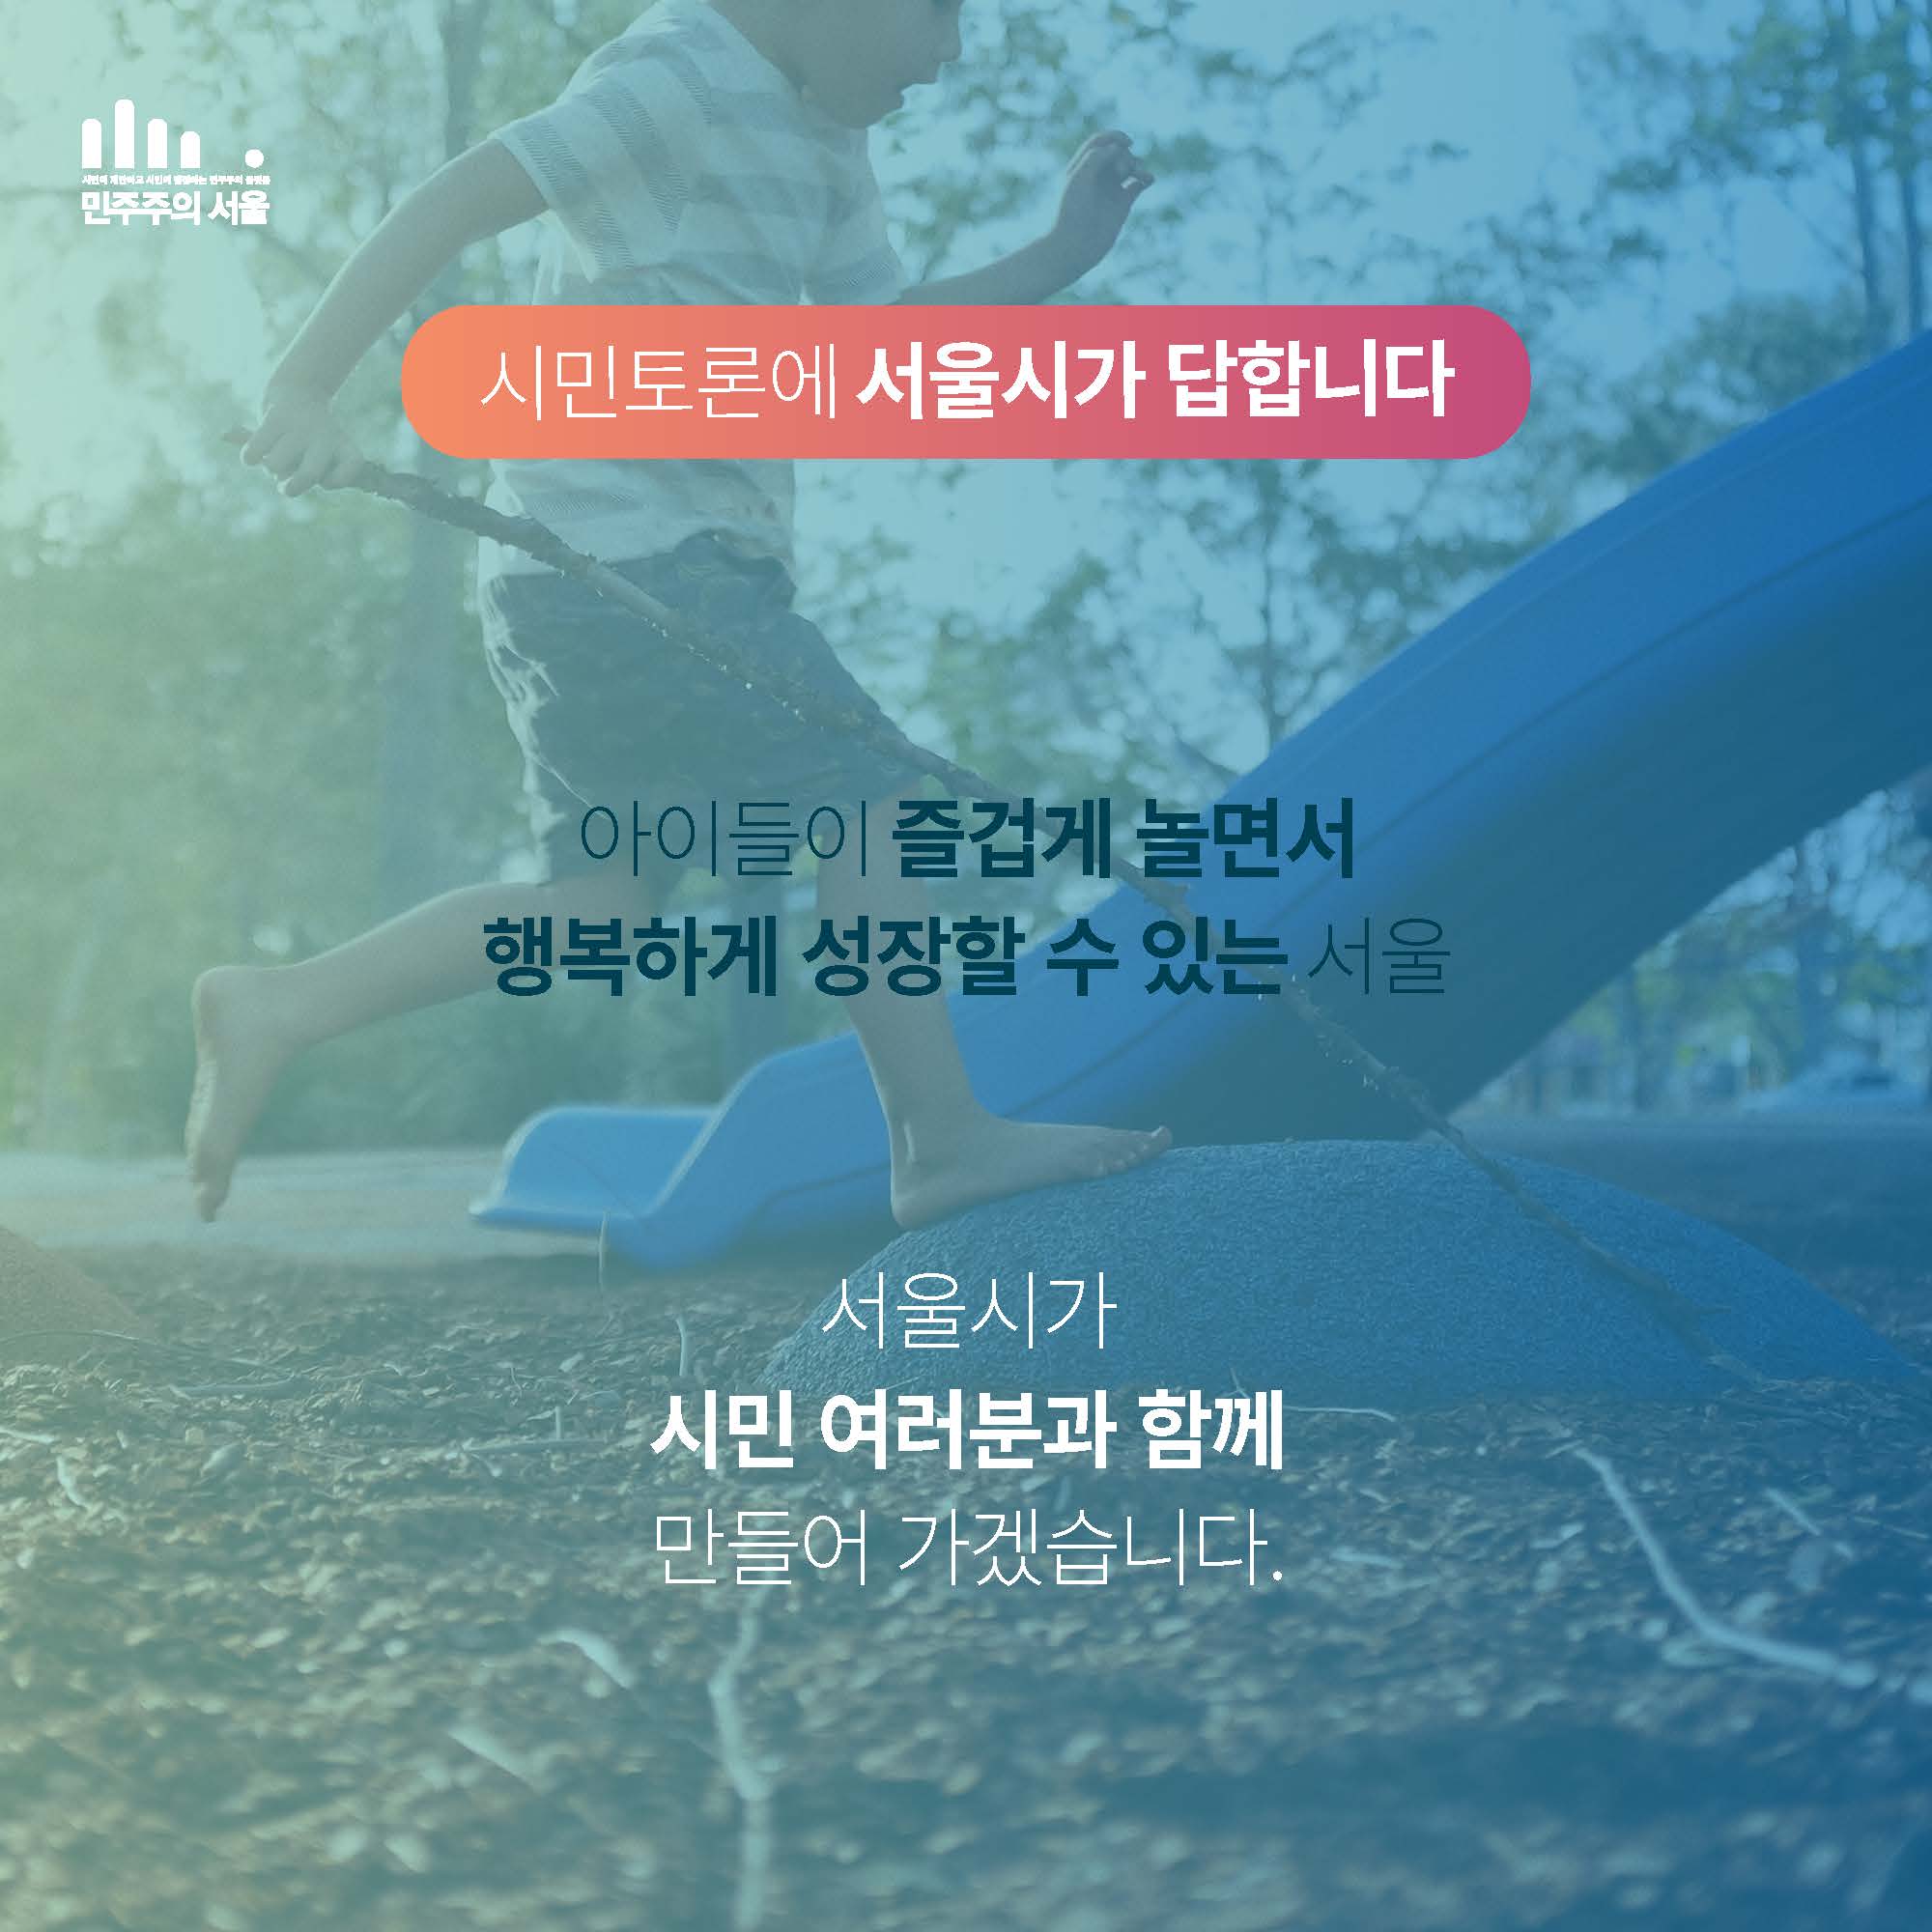 시민토론에 서울시가 답합니다. 


아이들이 즐겁게 놀면서
행복하게 성장할 수 있는 서울

서울시가 시민 여러분과 함께 만들어 가겠습니다. 
